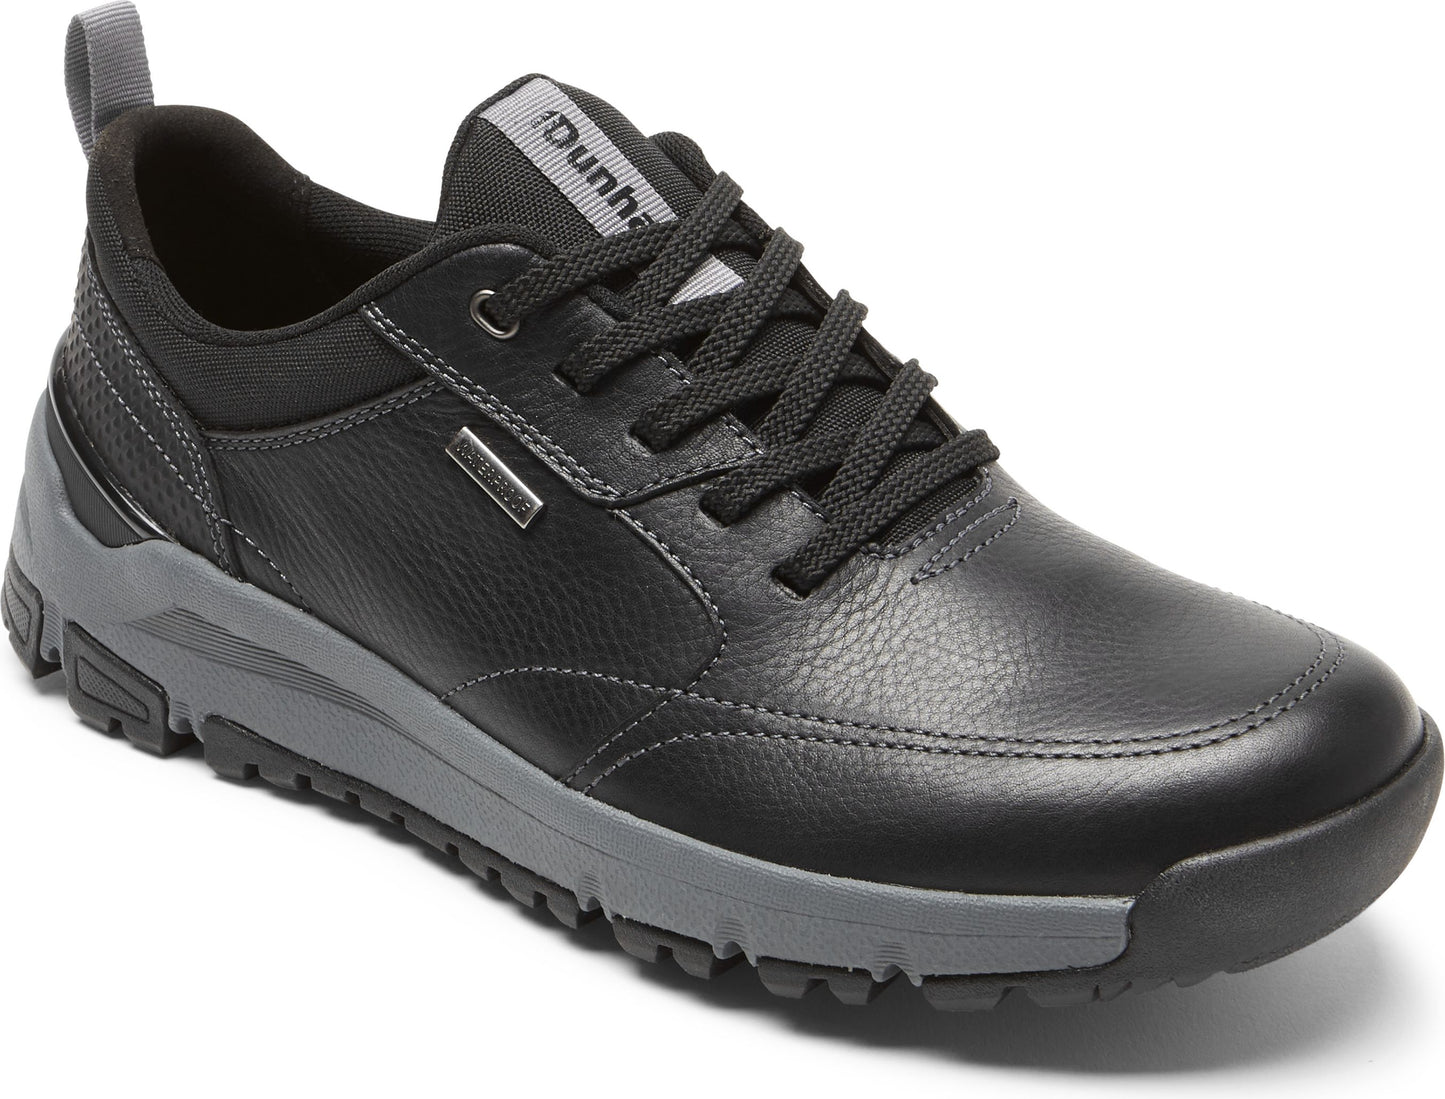 Dunhan Shoes Glastonbury Ubal Ii Steel Black - Extra Wide